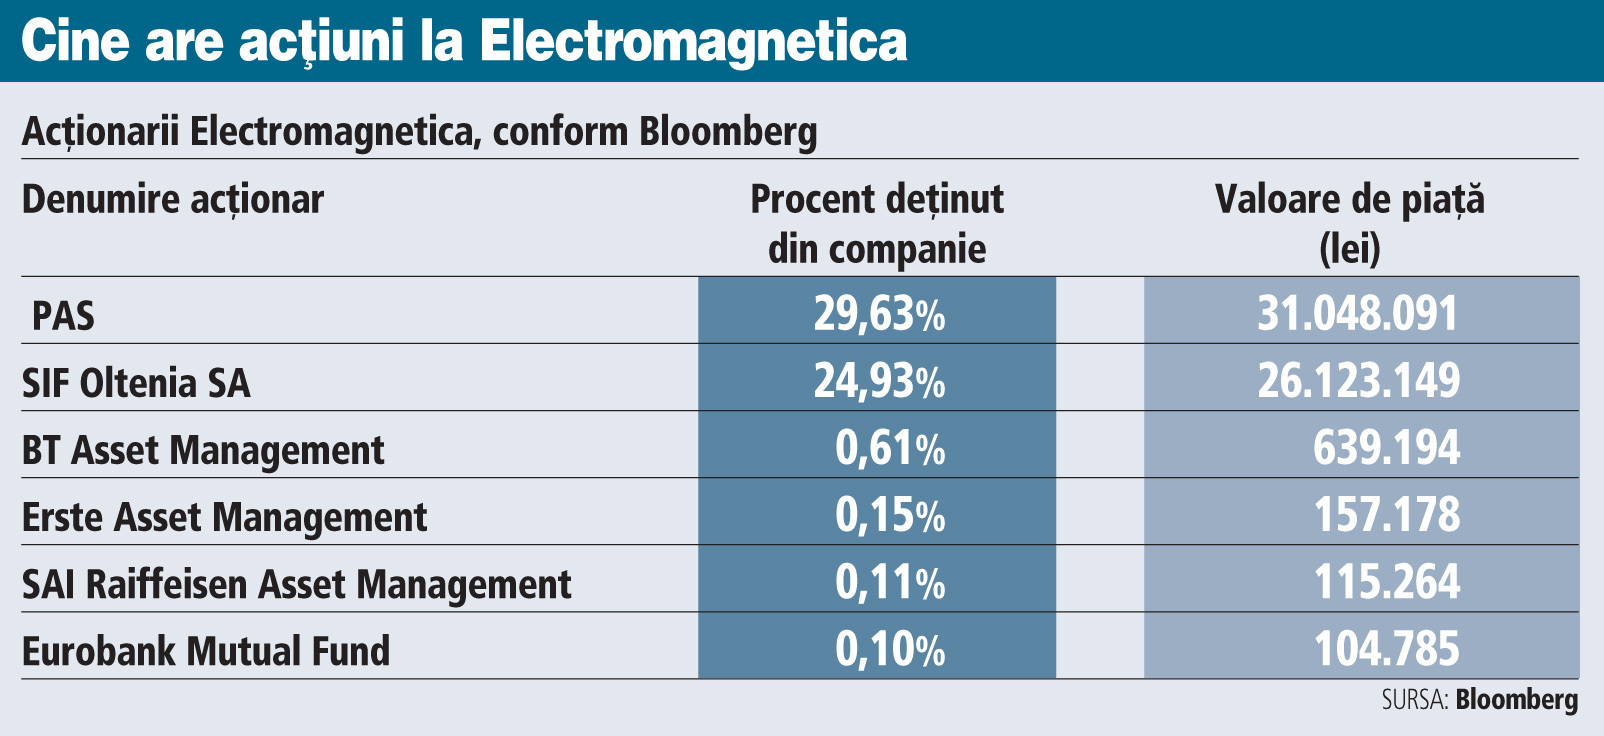 Administratorii fondurilor mutuale ale Băncii Transilvania, Raiffeisen şi Erste se numără printre acţionarii Electromagnetica